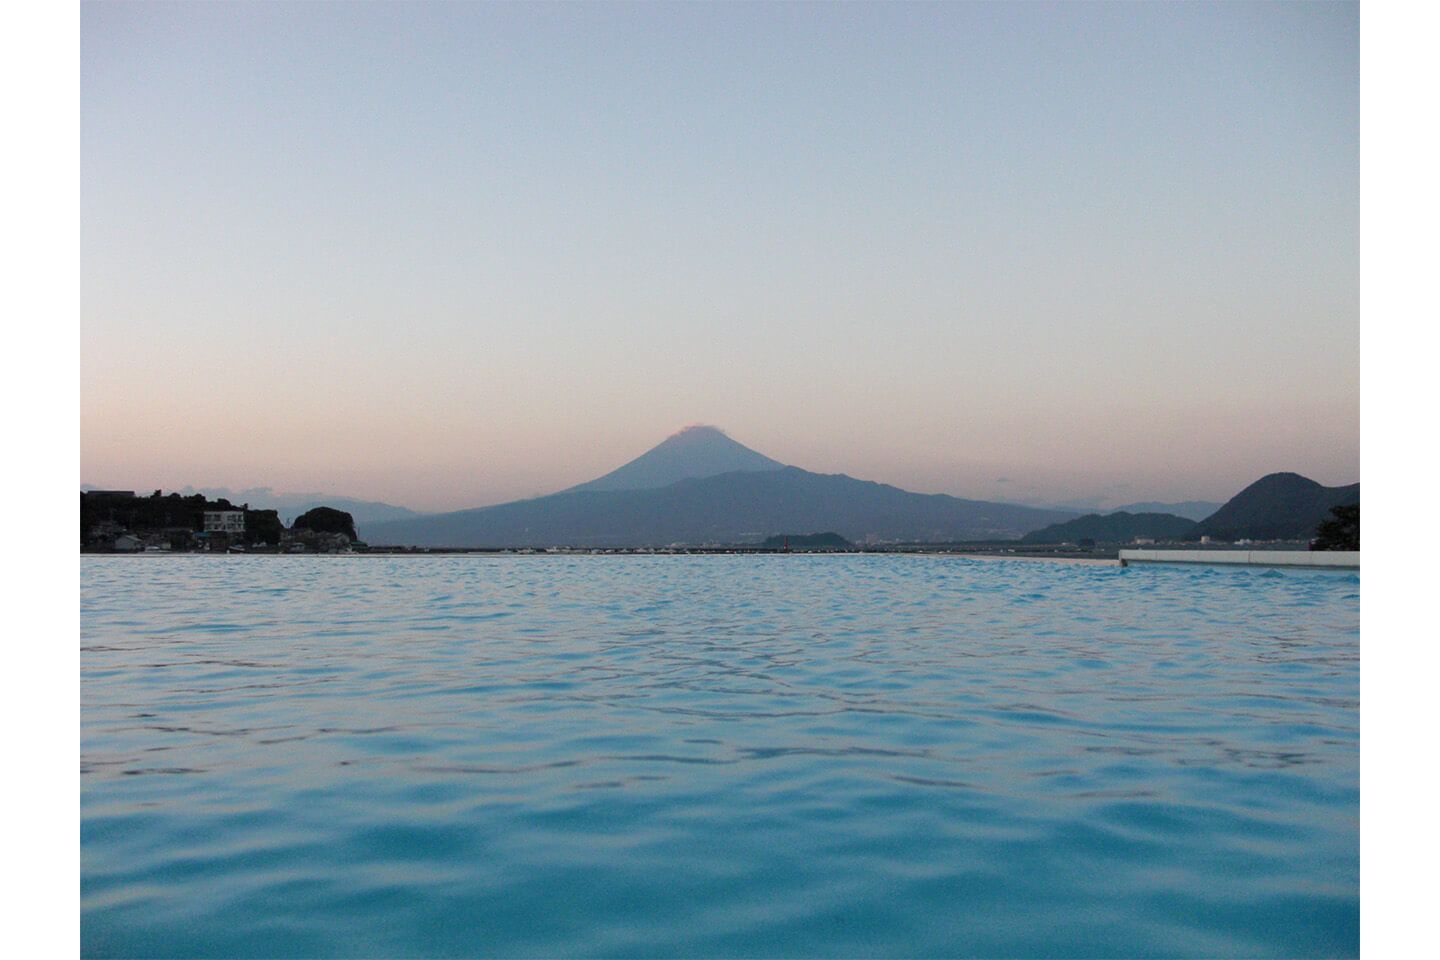           デジョユジャパンの施工した、プールの向こうに富士山がそびえるインフィニティプールの景色